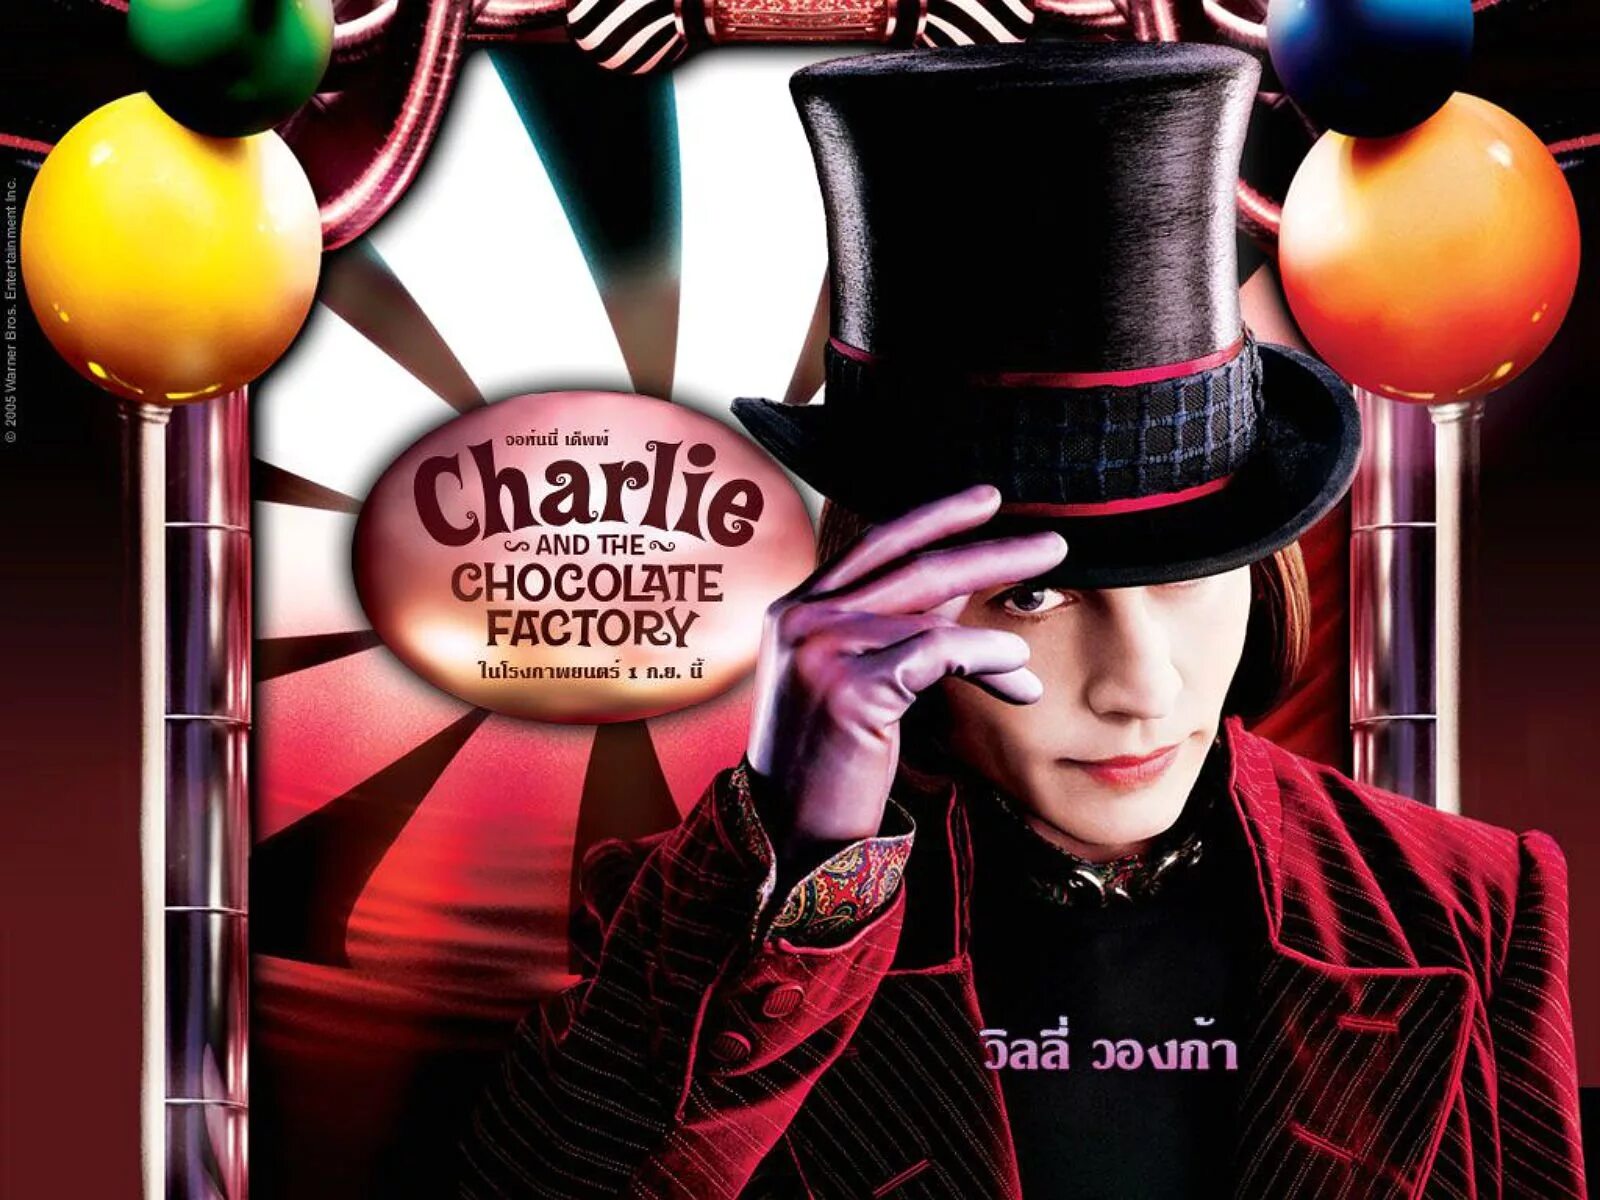 Покажи шоколадную фабрику. Джонни Депп Чарли и шоколадная фабрика. Чарли и шоколадная фабрика / Charlie and the Chocolate Factory (2005).